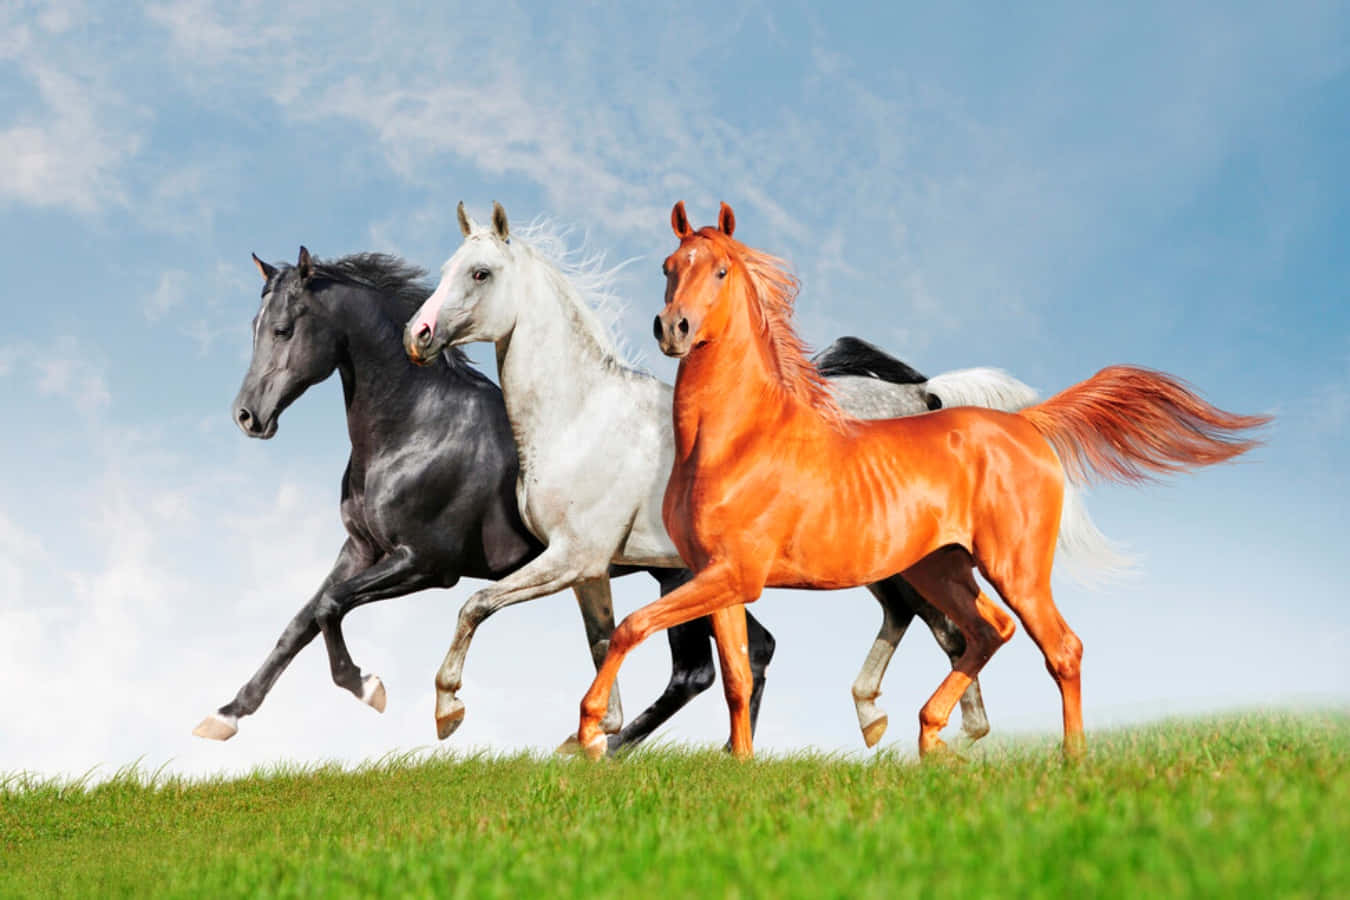 Majestic Arabian Horses Roaming Across a Fields